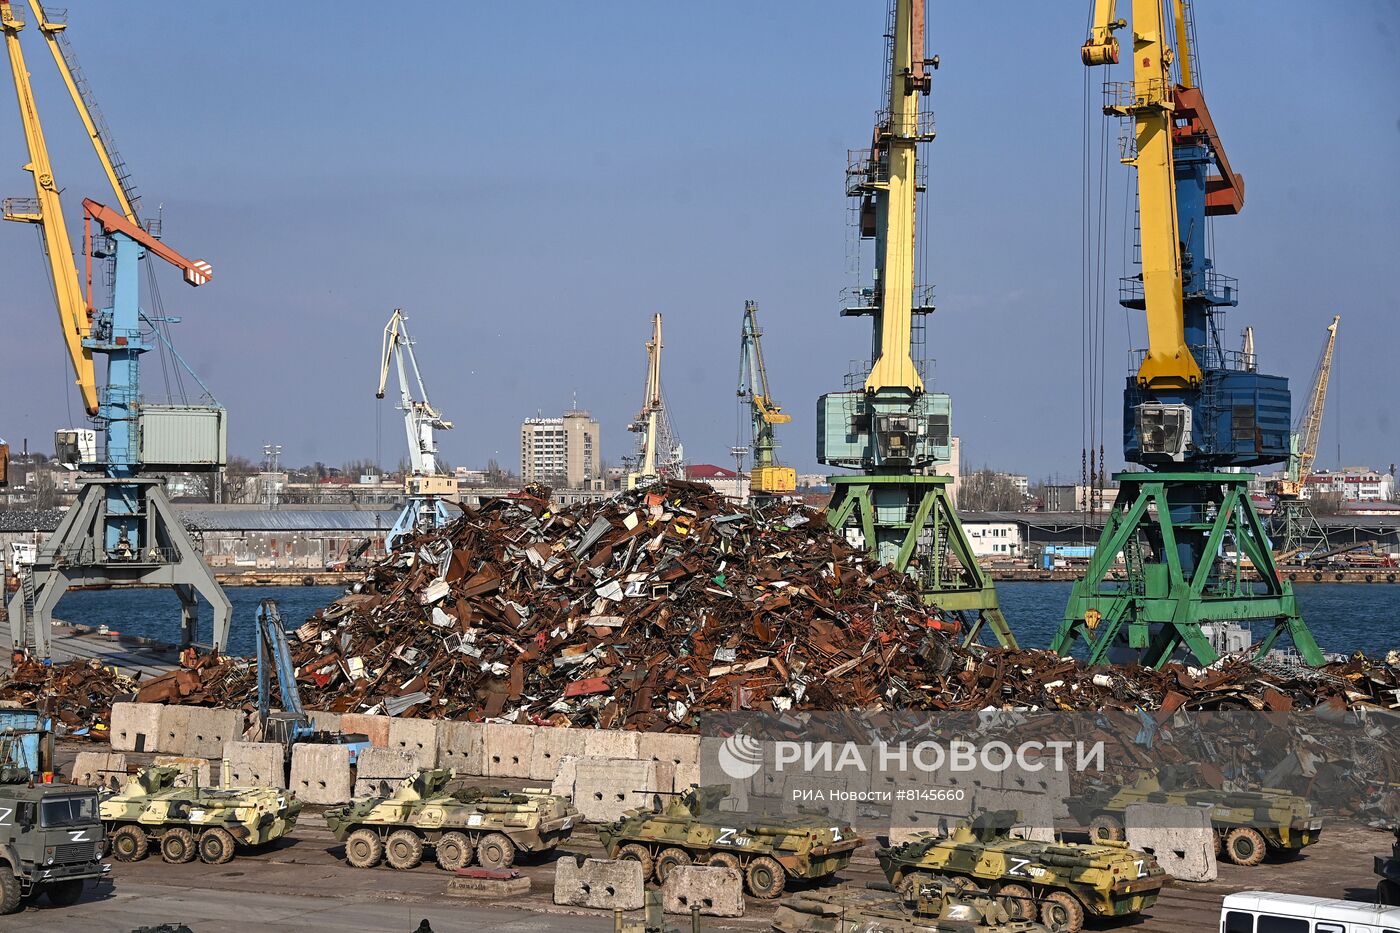 Первый российский корабль Черноморского флота "Орск" зашел в порт Бердянска 